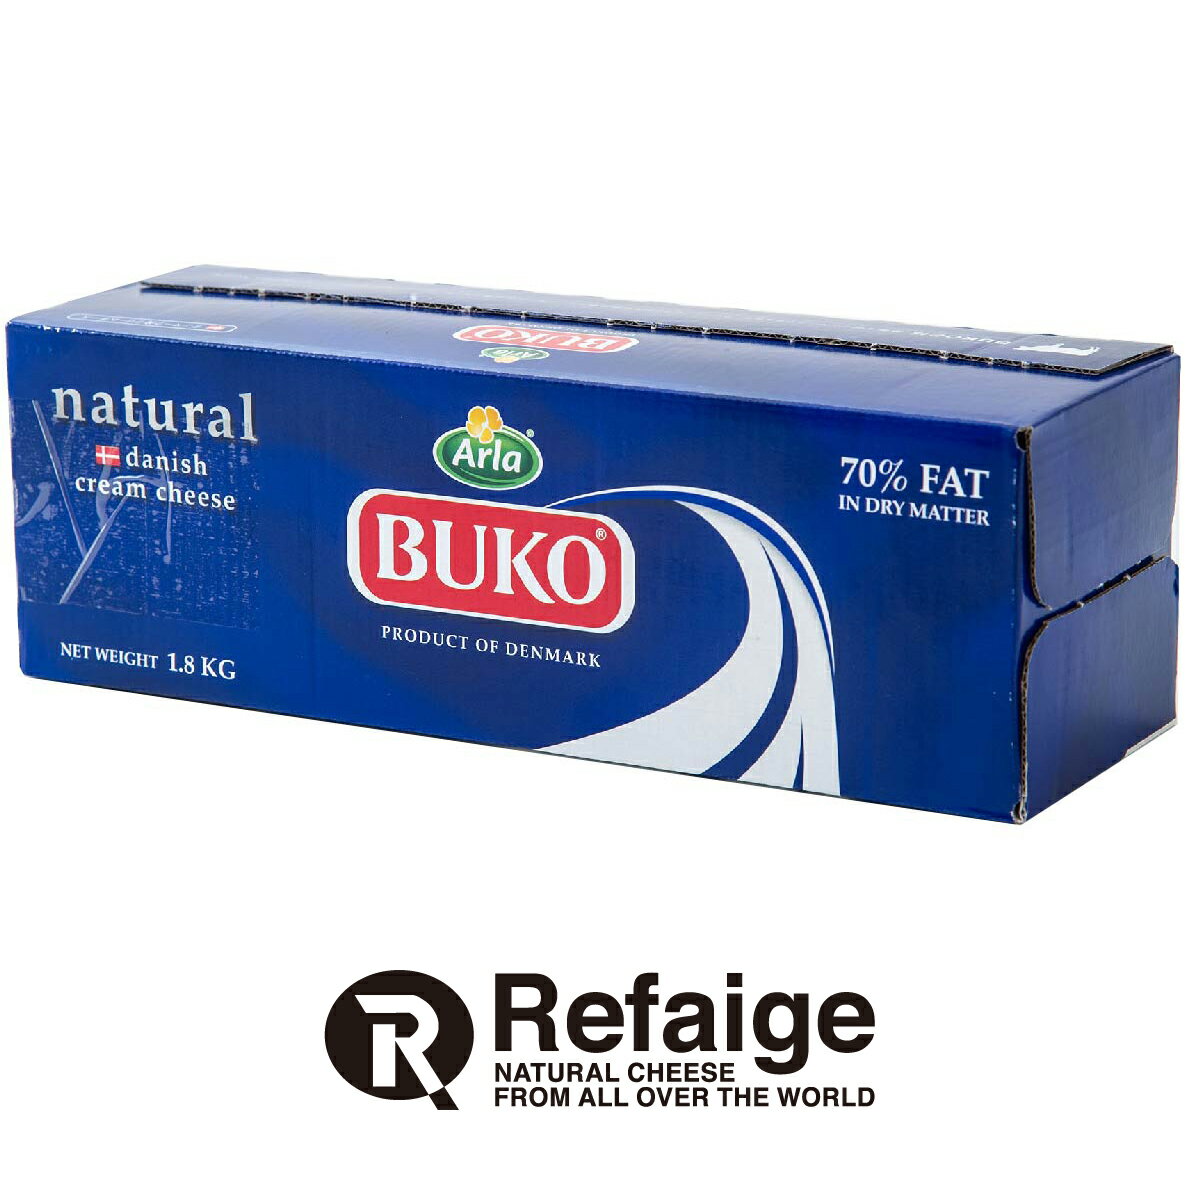 BUKOクリームチーズ BUKO ブコは、ヨーロッパでトップクラスの乳製品メーカー、アーラ フーズがお届けするデンマーク産クリームチーズです。 豊かな自然の中で健やかに育った牛の良質な生乳をはじめ、厳選された天然の原材料のみで作られたナチュラルクリームチーズ、BUKO（ブコ）。コクがありながらクセがなく、ミルクのフレッシュな風味が生きる味わいは、さまざまな素材の味を引き立てます。 防腐剤や人工添加物、遺伝子組み換え原材料（GMO）不使用 程よい塩分量であらゆる素材の味を引き立てる デンマークで50年以上、日本でも40年以上の歴史と伝統 BUKOとは・・・ デンマーク語で「BU」（ブー）は牛の鳴き声、「KO」は牛を意味します。このキュートな名前は、世界各国で"デンマーク産高品質クリームチーズ"のブランドとして親しまれています。 種類別 ナチュラルチーズ 原材料名 生乳、クリーム、食塩、ゼラチン/安定剤(ローカストビーンガム)、クエン酸 原産国 デンマーク 内容量 1.8kg×3個 タイプ クリーム 加工 — 料理 お菓子などの材料に 個性 ★☆☆ 塩味 ★☆☆ 配送 クール便 賞味期限 2024年8月5日 保存方法 要冷蔵(10℃以下)乾燥が大敵。 密閉容器にいれて冷蔵庫の野菜室で保存がおすすめです。 開封後は賞味期限に関わらずお早めにお召し上がりください。 栄養成分表示 熱量346kcal、たんぱく質8.2g、脂質33.0g、炭水化物2.3g、食塩相当量0.7g＊100gあたり／推定値 製造・販売者 株式会社リフェージュ　／　埼玉県戸田市美女木5-21-7 ＜仕入・製造・検査・出荷まで自社工場一貫体制にて行っております。＞